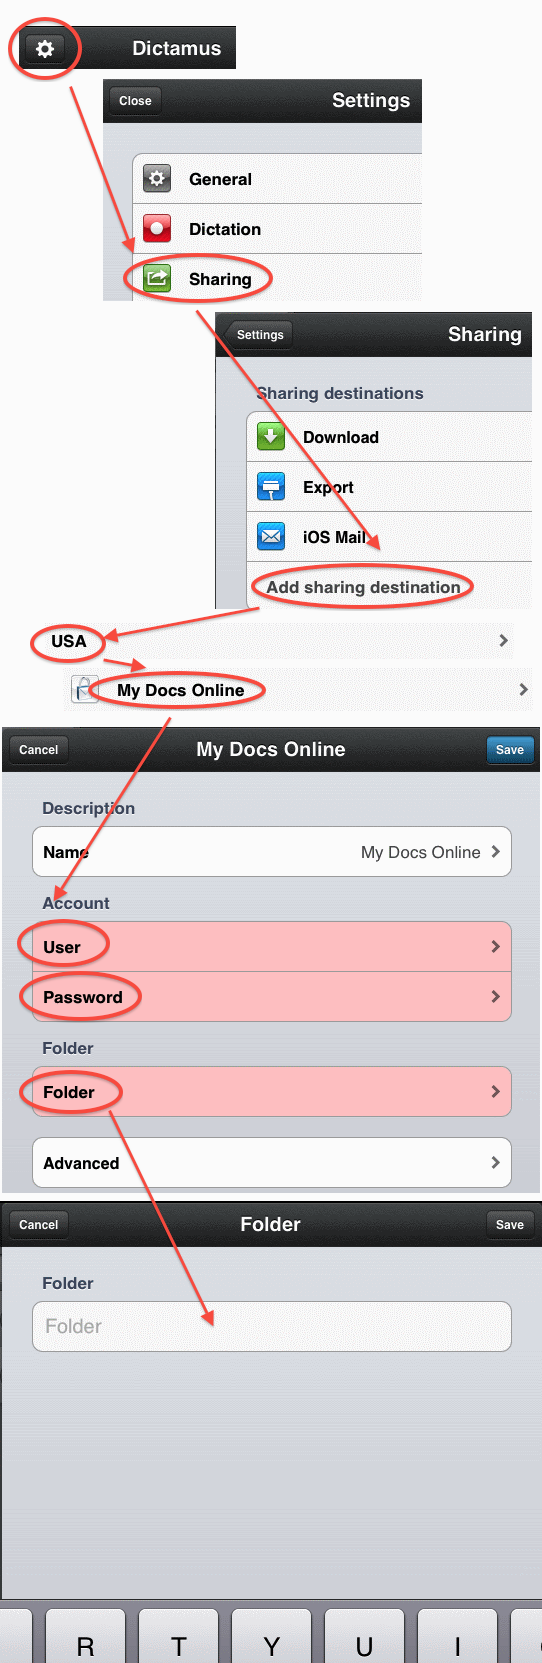 Dictamus Configuration for My Docs Online